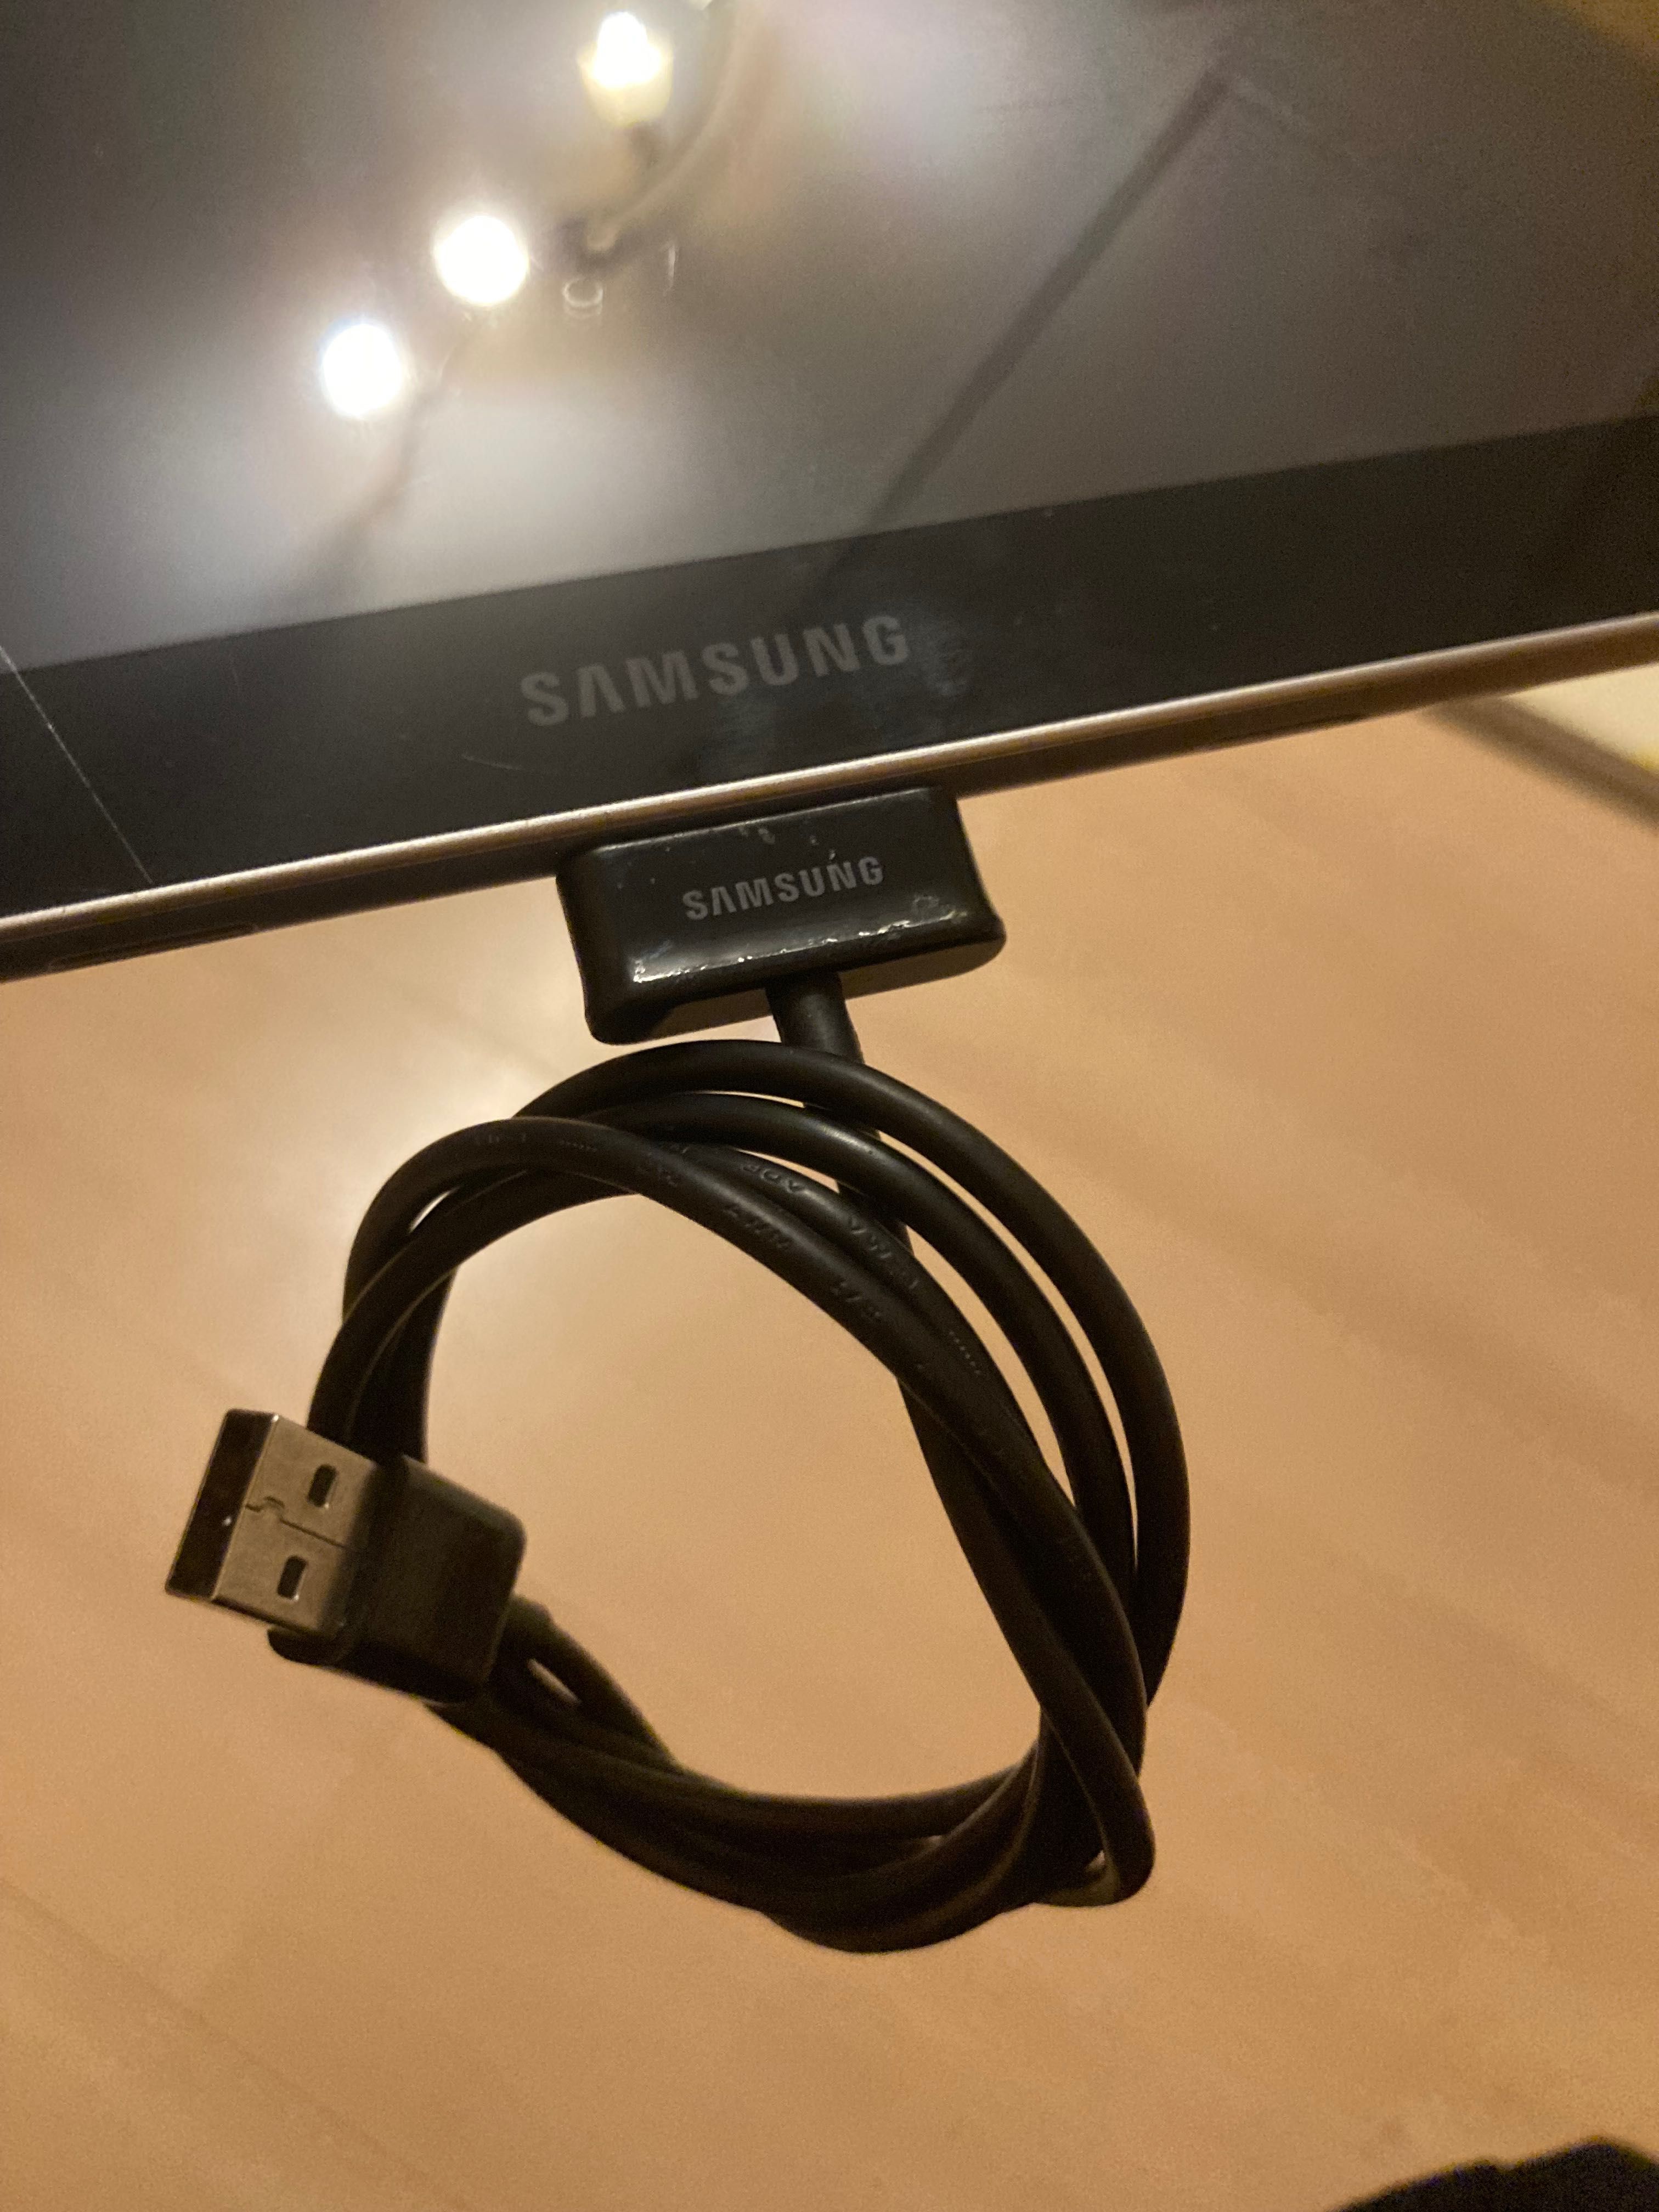 Tablet Samsung Galaxy Tab 8.9 sprawny, bateria trzyma